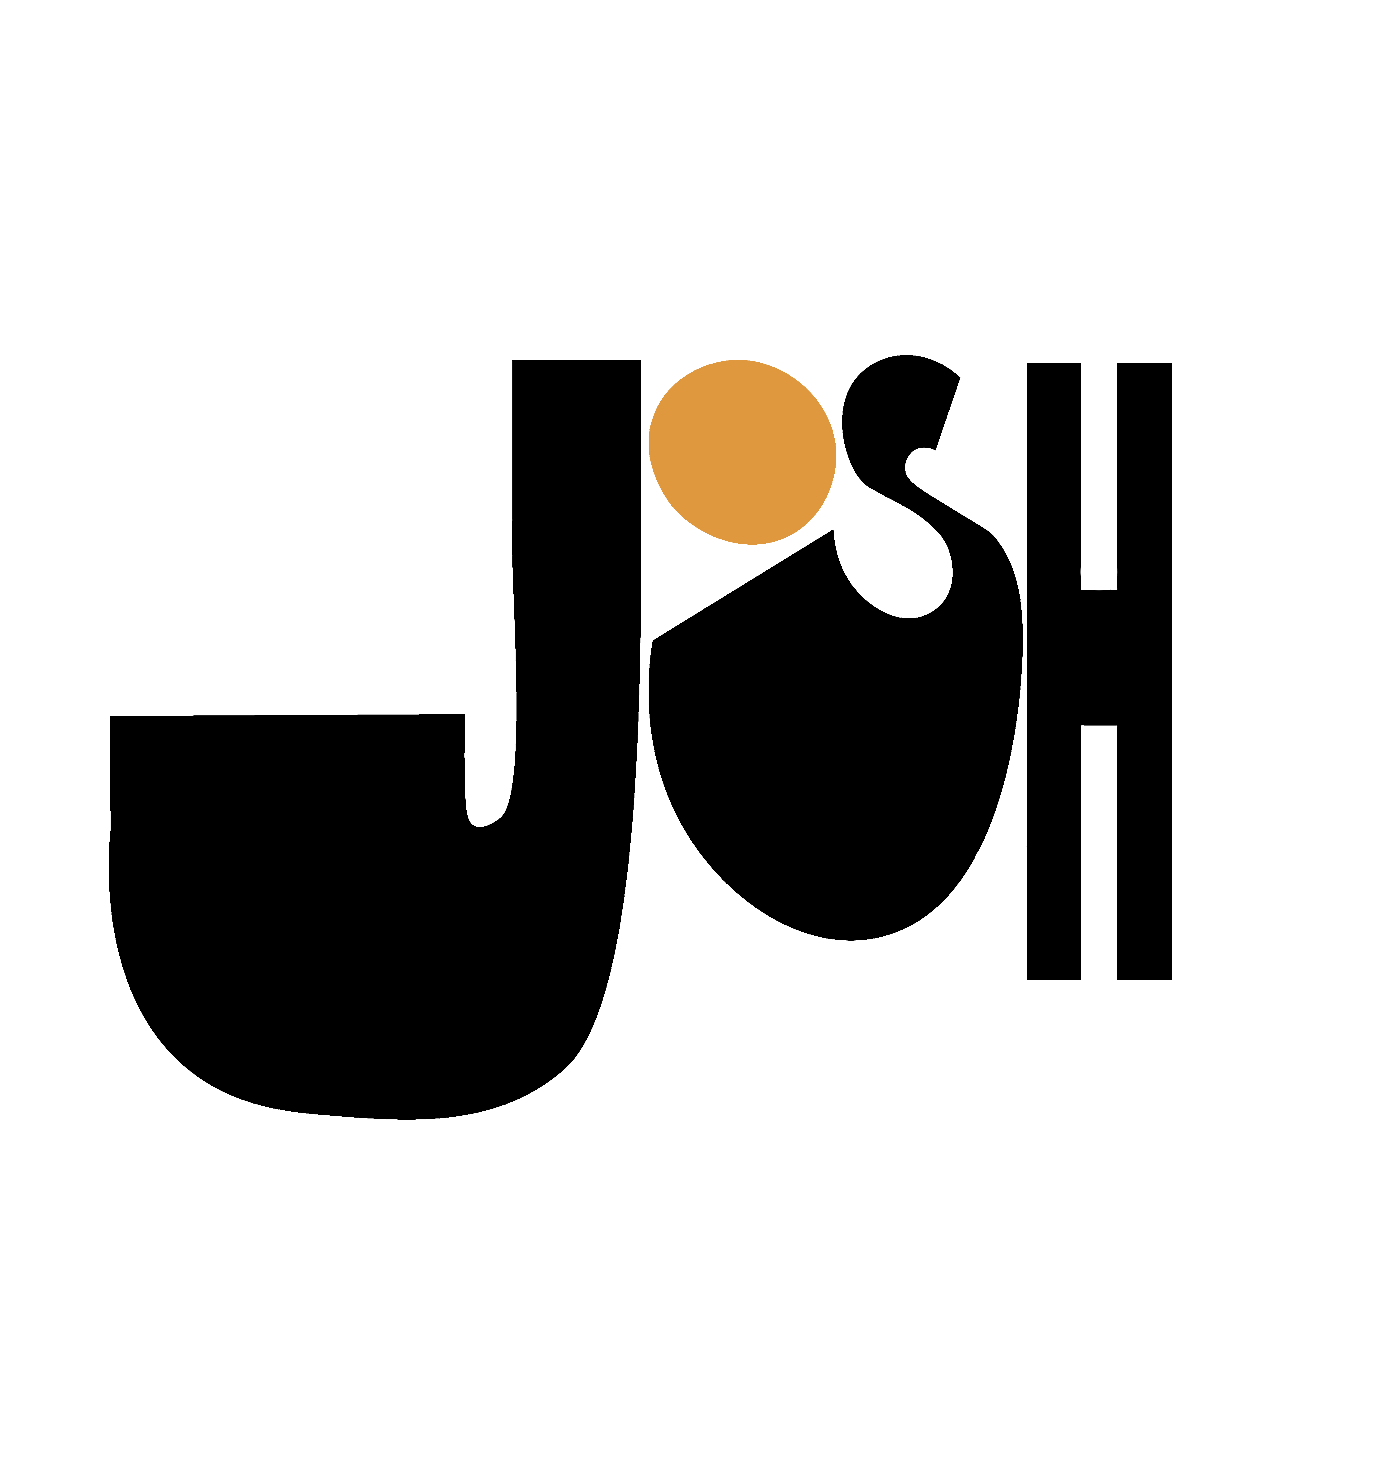 josh walker